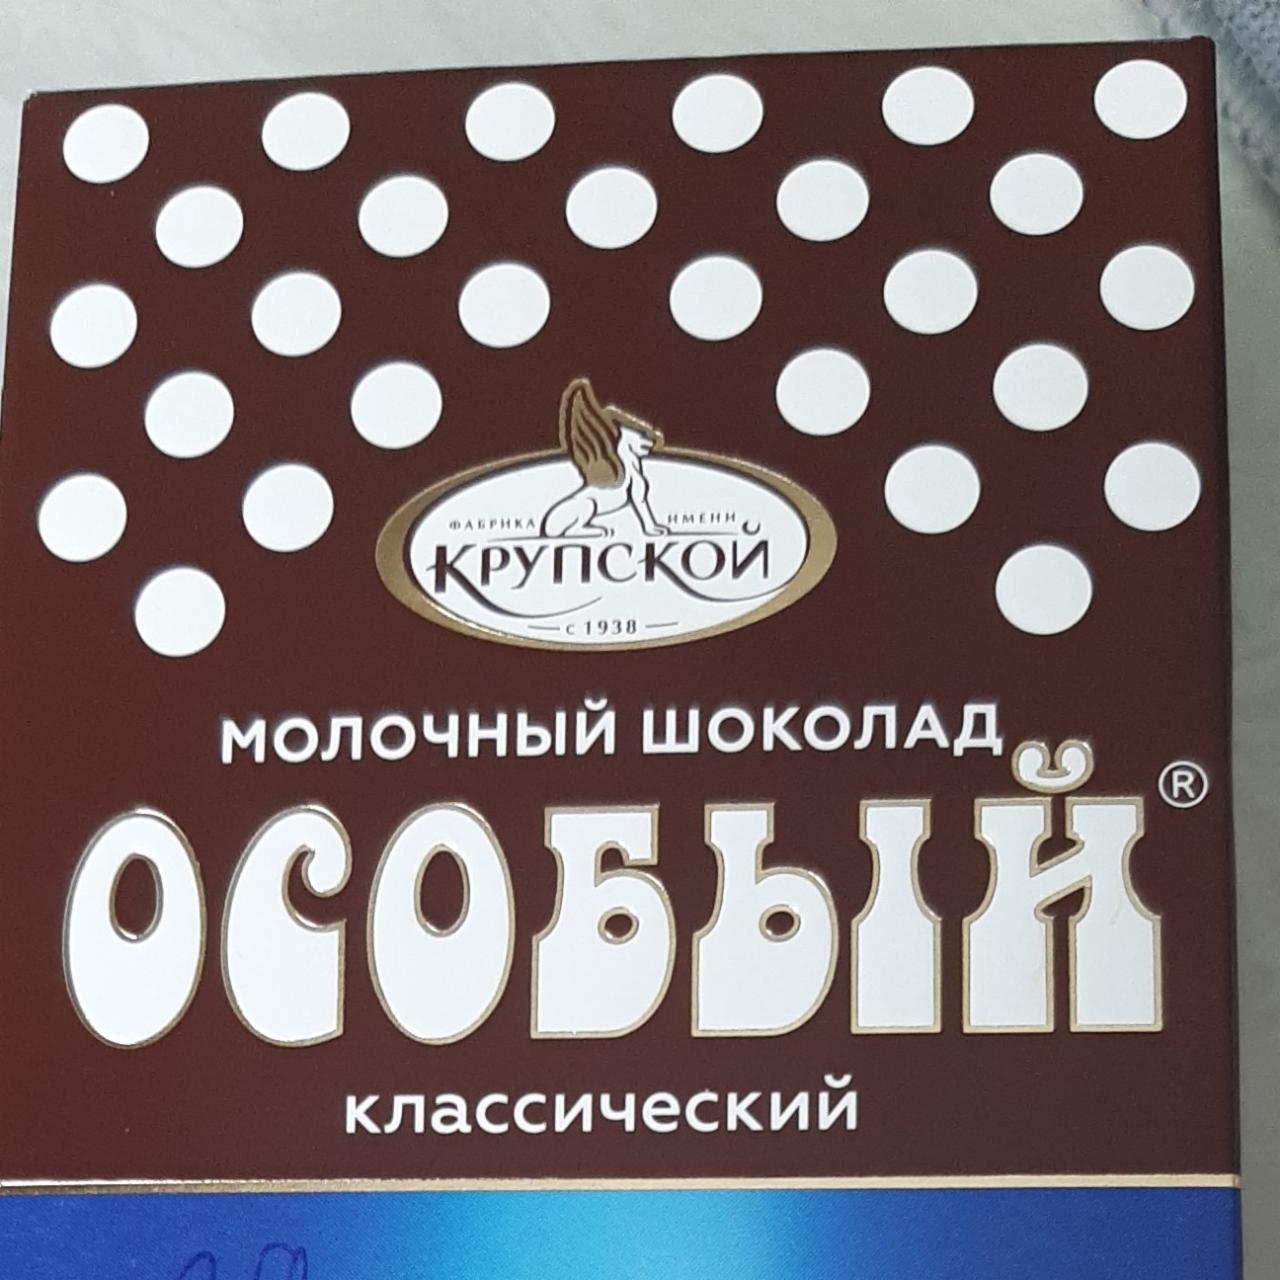 Фото - Шоколад молочный особый классический КФ им. Крупской Н.К.